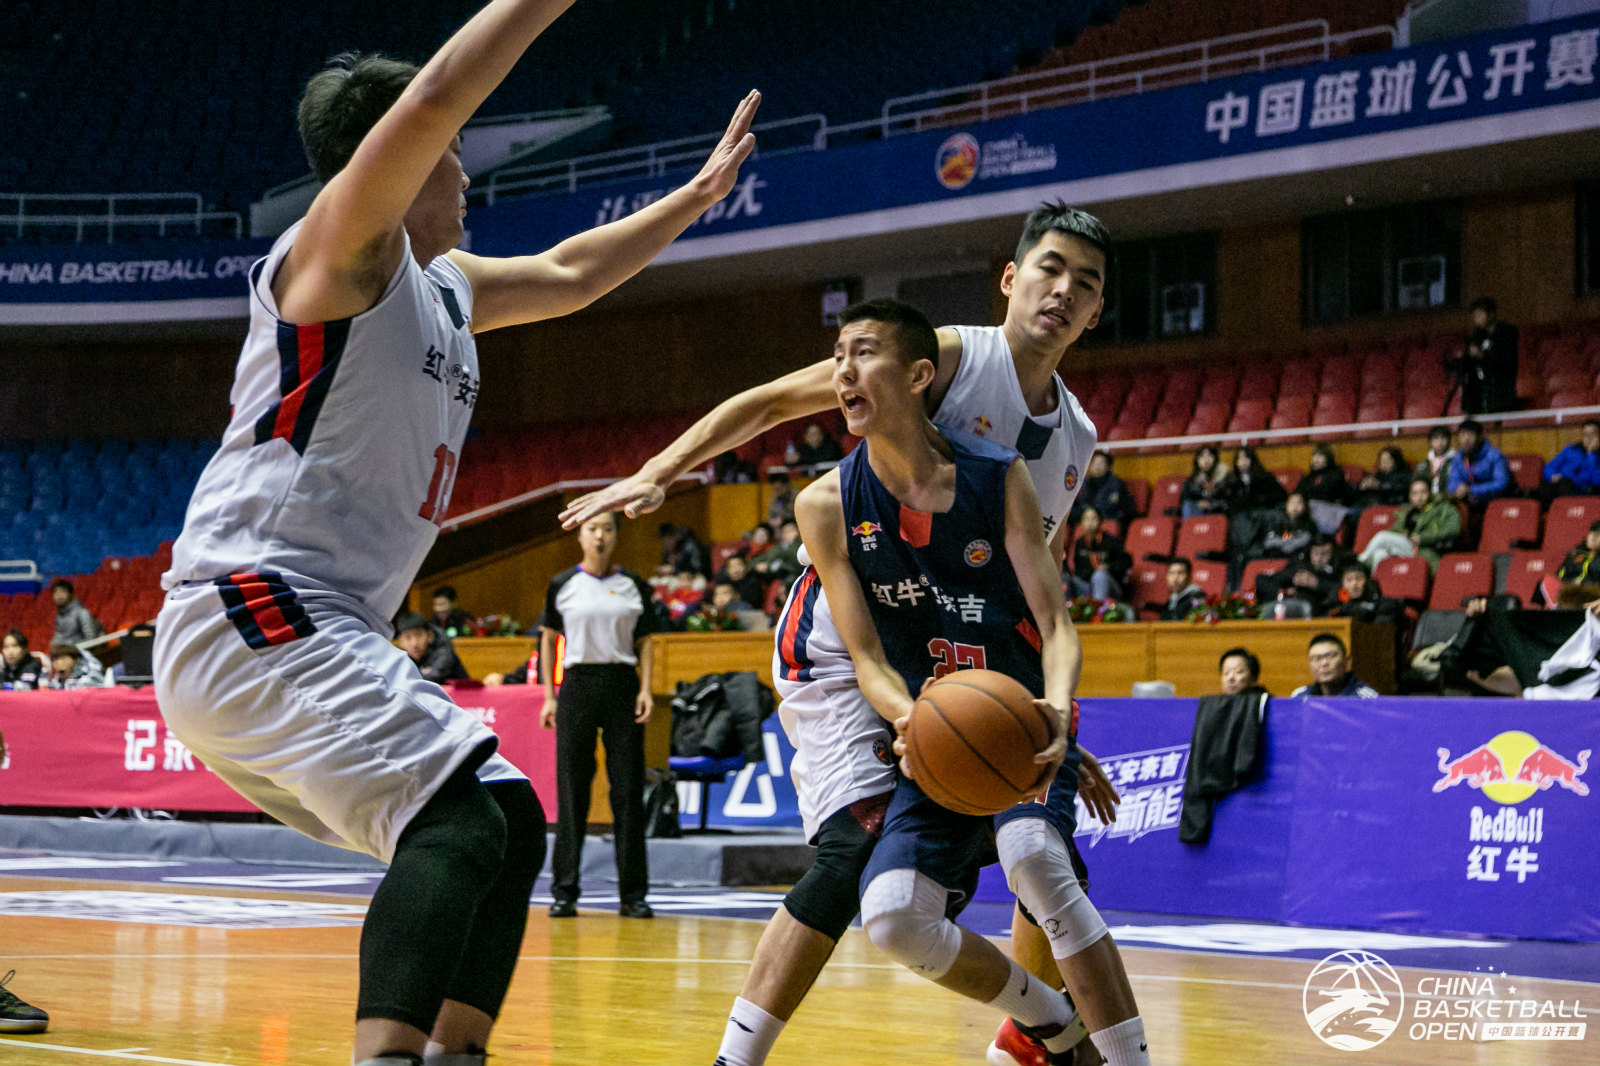 中国篮球公开赛北区排位赛开打,吉林张弘狂飙53分破纪录